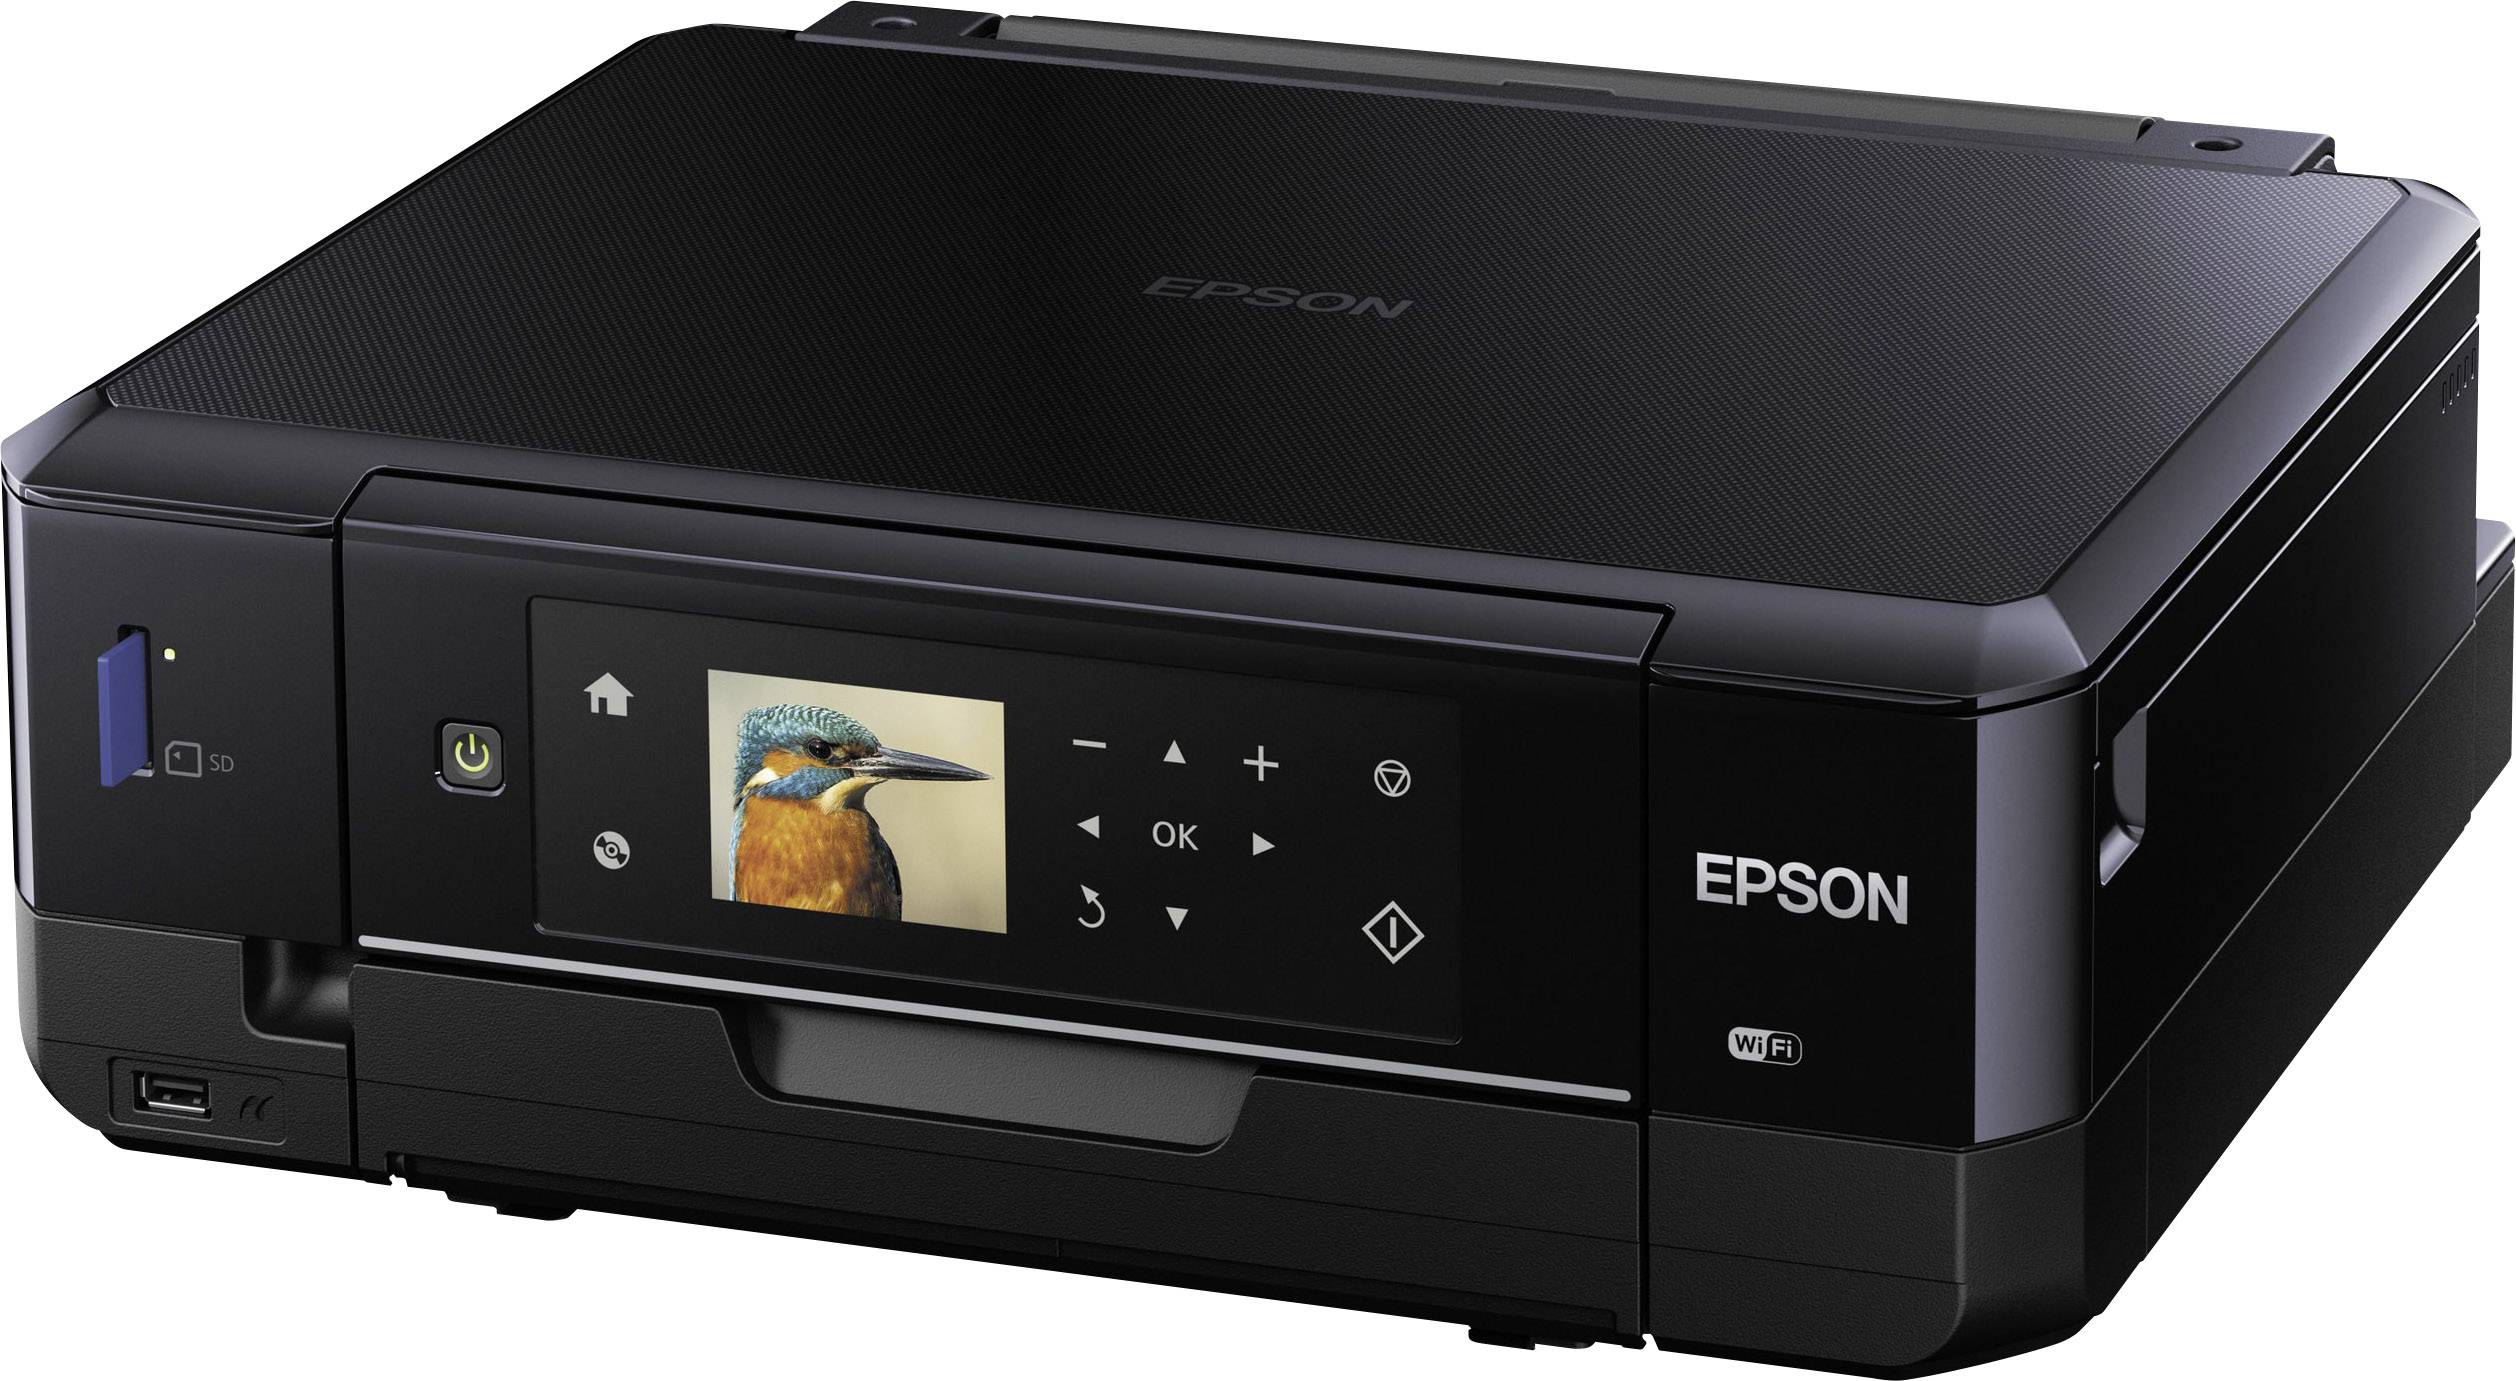  Epson  Expression Premium XP 620  Imprimante multifonction  